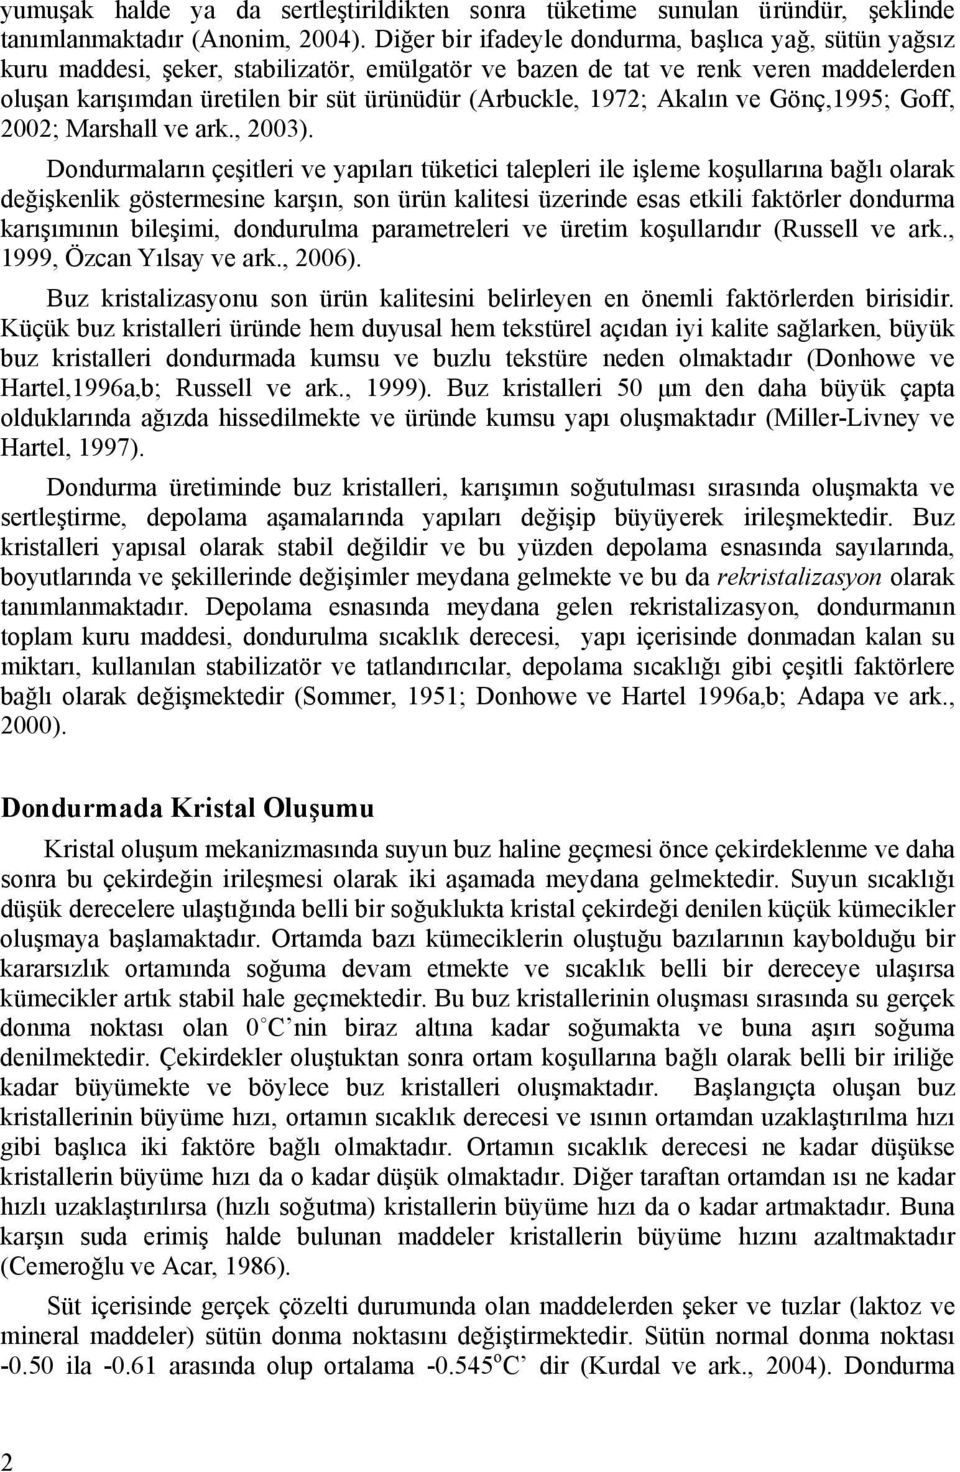 1972; Akalın ve Gönç,1995; Goff, 2002; Marshall ve ark., 2003).